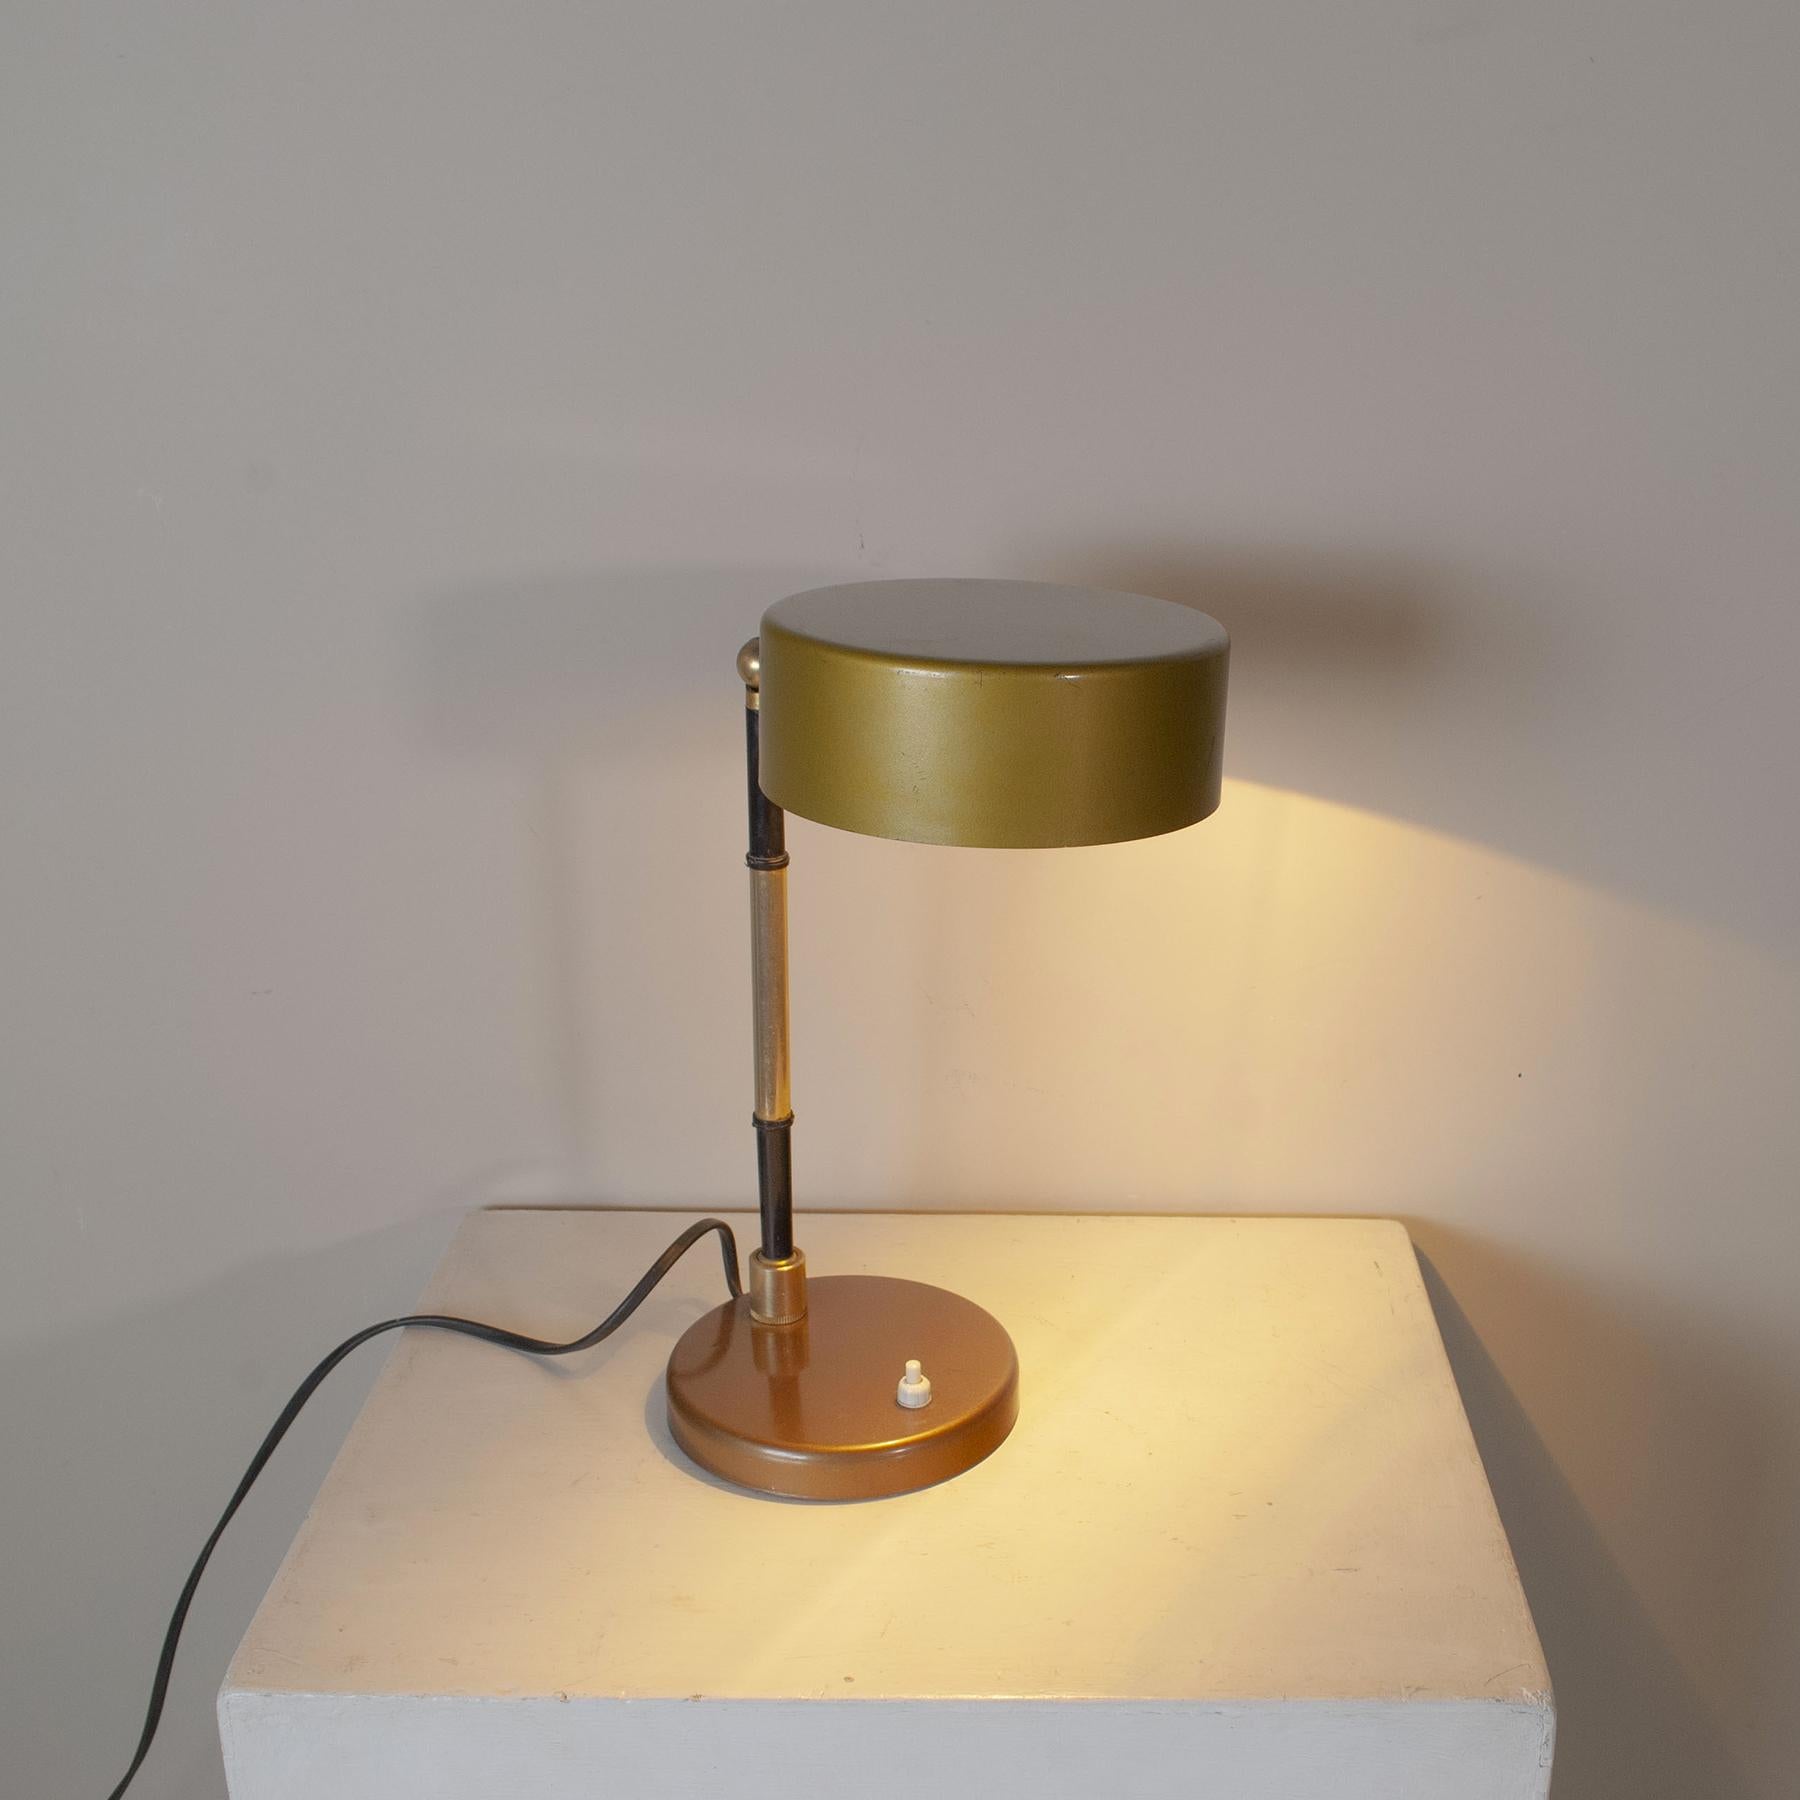 Lampe de table en métal usiné et chromé et tige pivotante en laiton dans le style des années 1960 d'Oscar Torlasco.